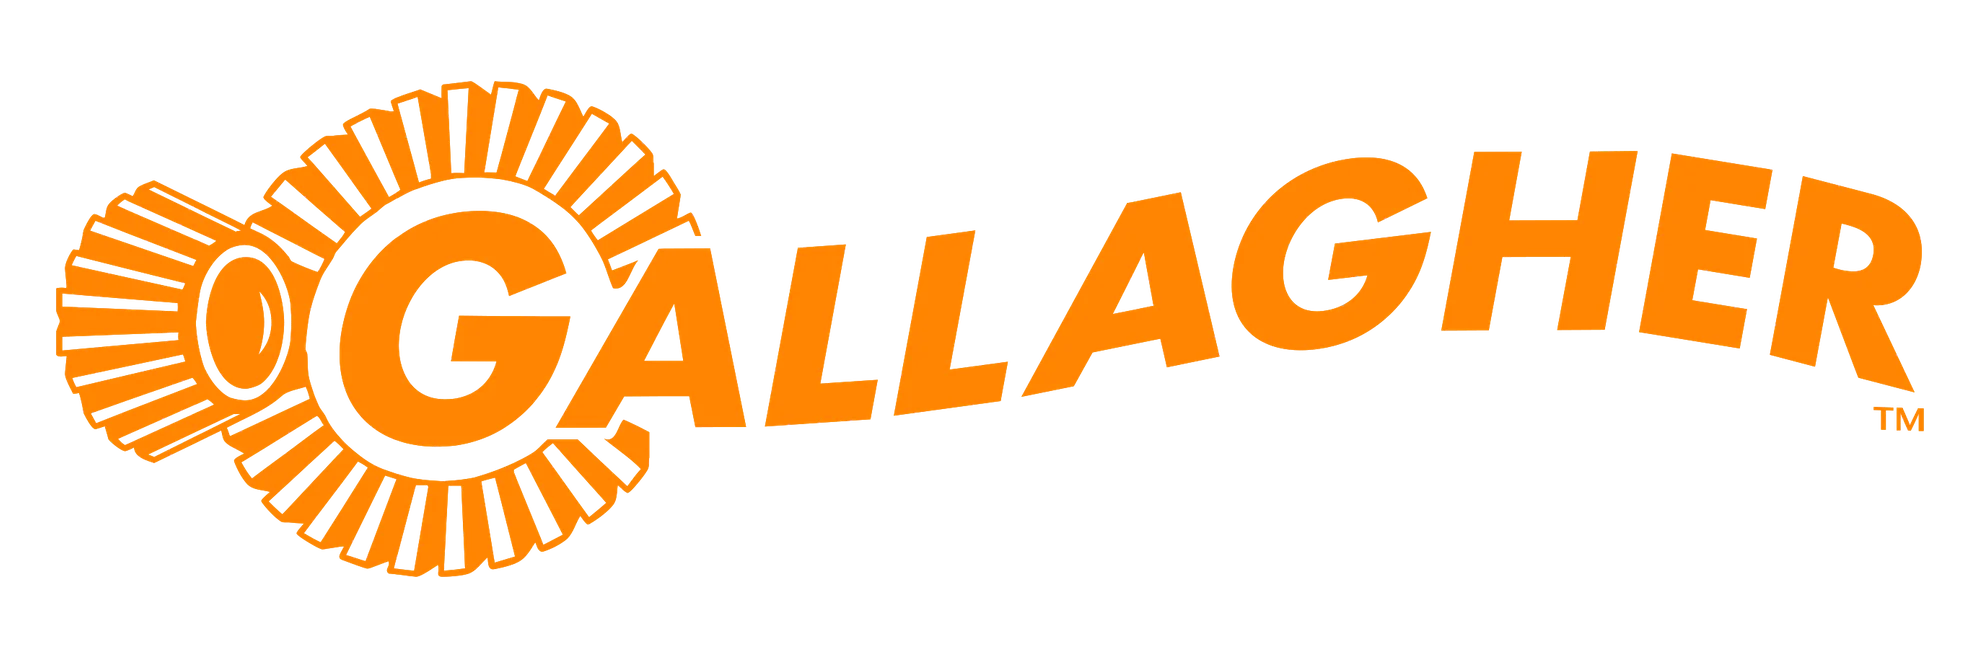 Gallagher_logo_Orange_1980x